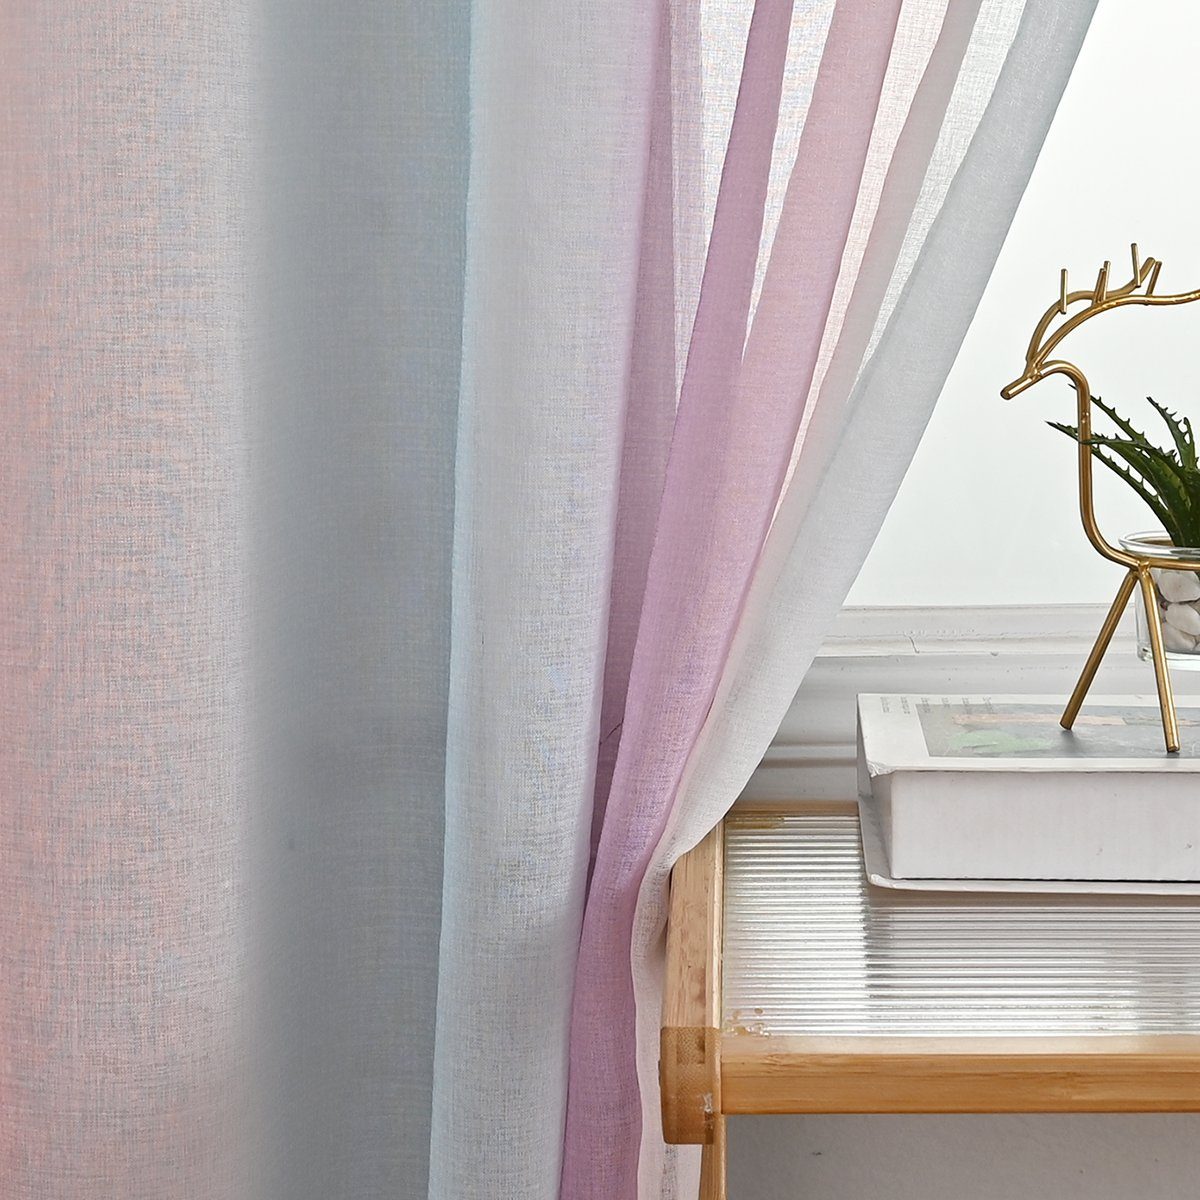 HOMEIDEAS, transparent, Bunt Vorhang und (2 Voile Stangendurchzug Gardine, Polyester, St),